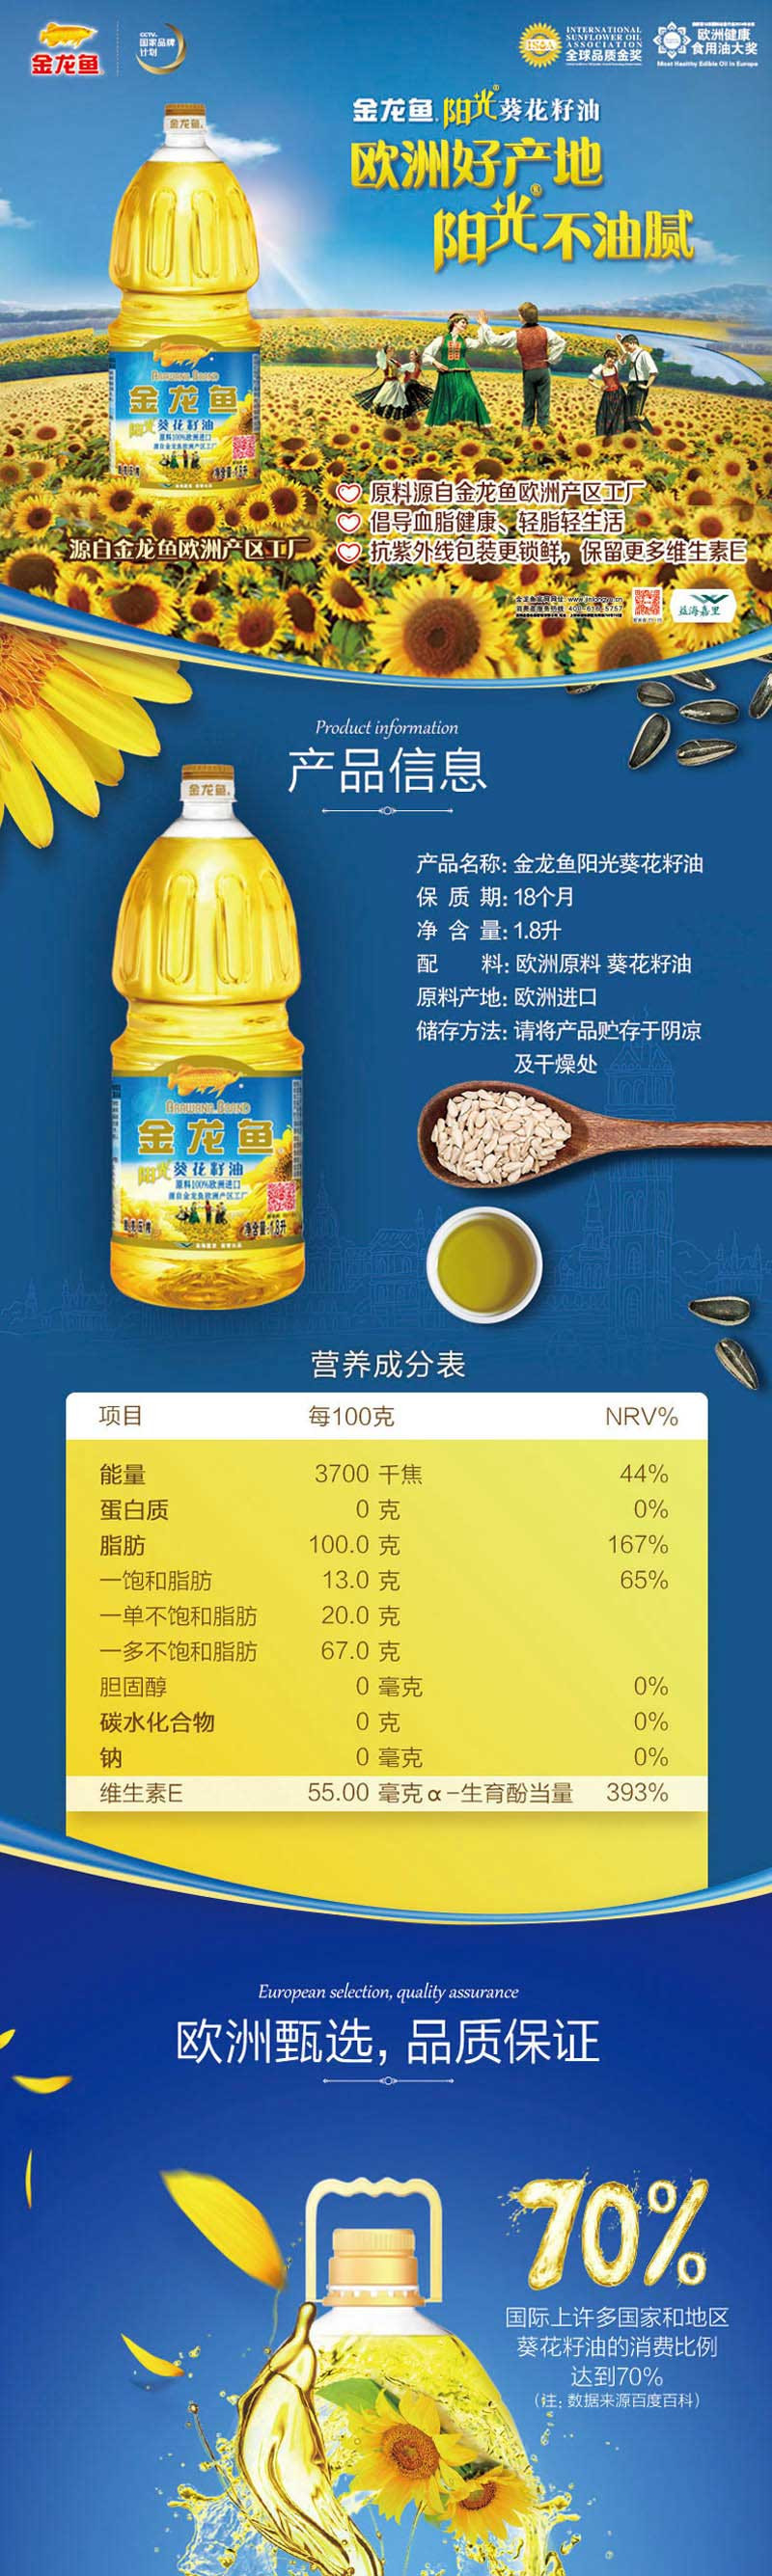 金龙鱼 米油组合 葵花油1.8l*1+顶醇大米2.5kg*2